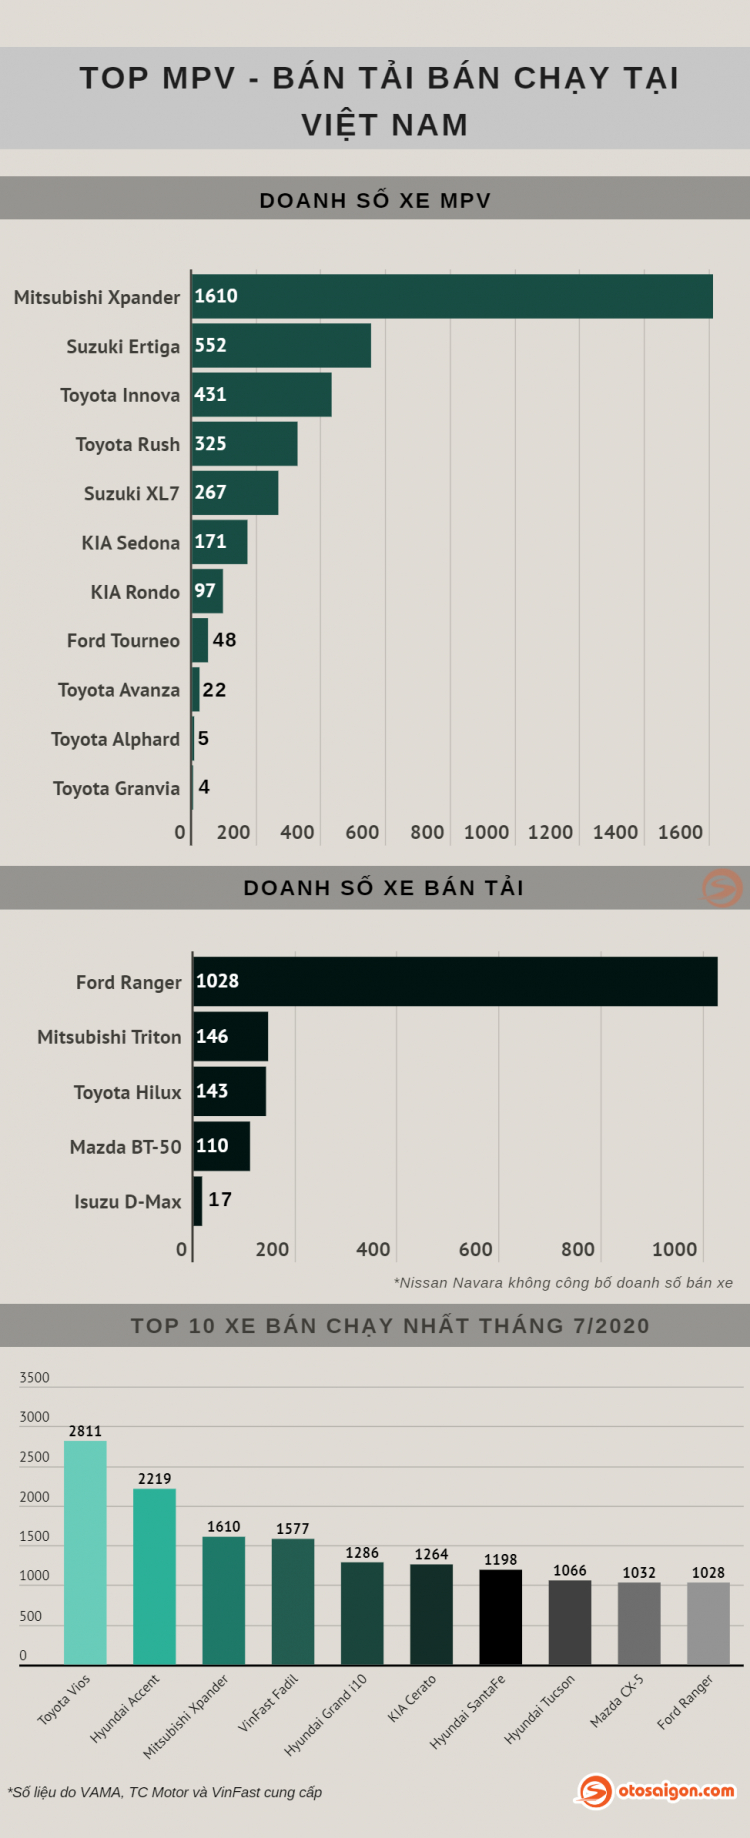 [Infographic] Top MPV/Bán tải bán chạy tại Việt Nam tháng 7/2020: Xpander vẫn chưa tìm được đối trọng